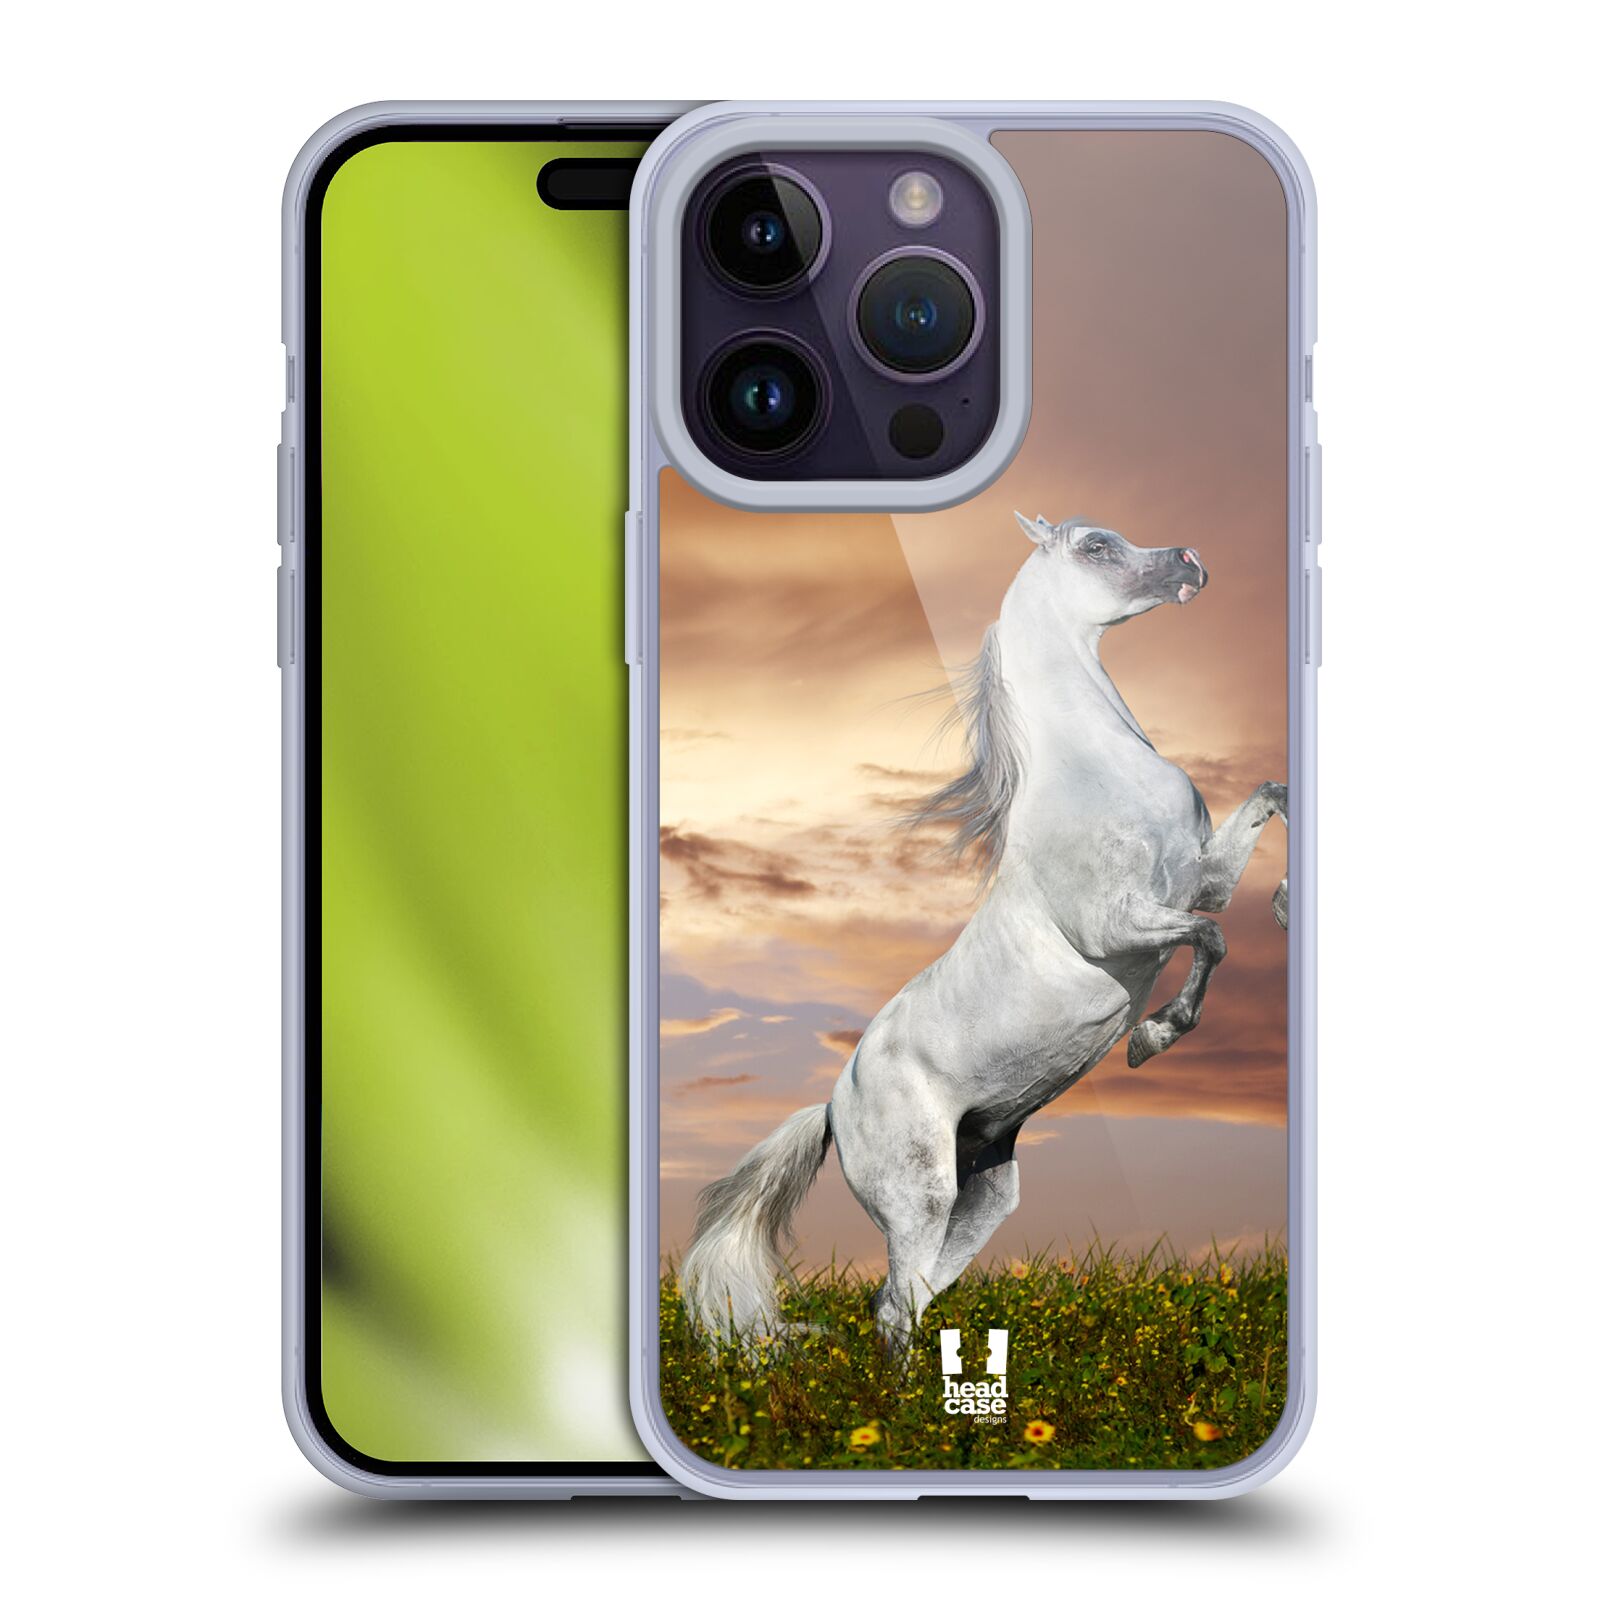 Plastový obal HEAD CASE na mobil Apple Iphone 14 PRO MAX vzor Divočina, Divoký život a zvířata foto DIVOKÝ KŮŇ MUSTANG BÍLÁ